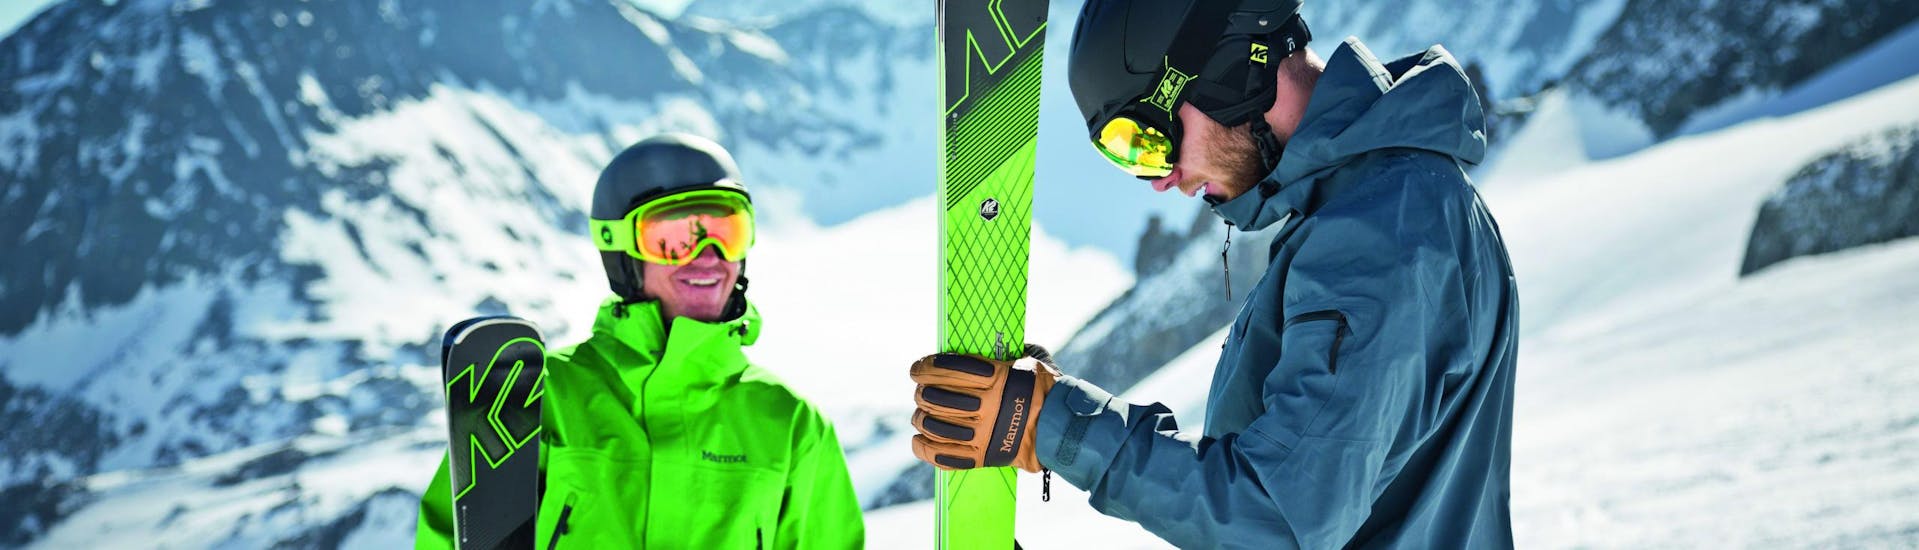 Privater Skikurs für Erwachsene "Crashkurs" für alle Levels mit Skischule Snow Academy Monika Berwein.